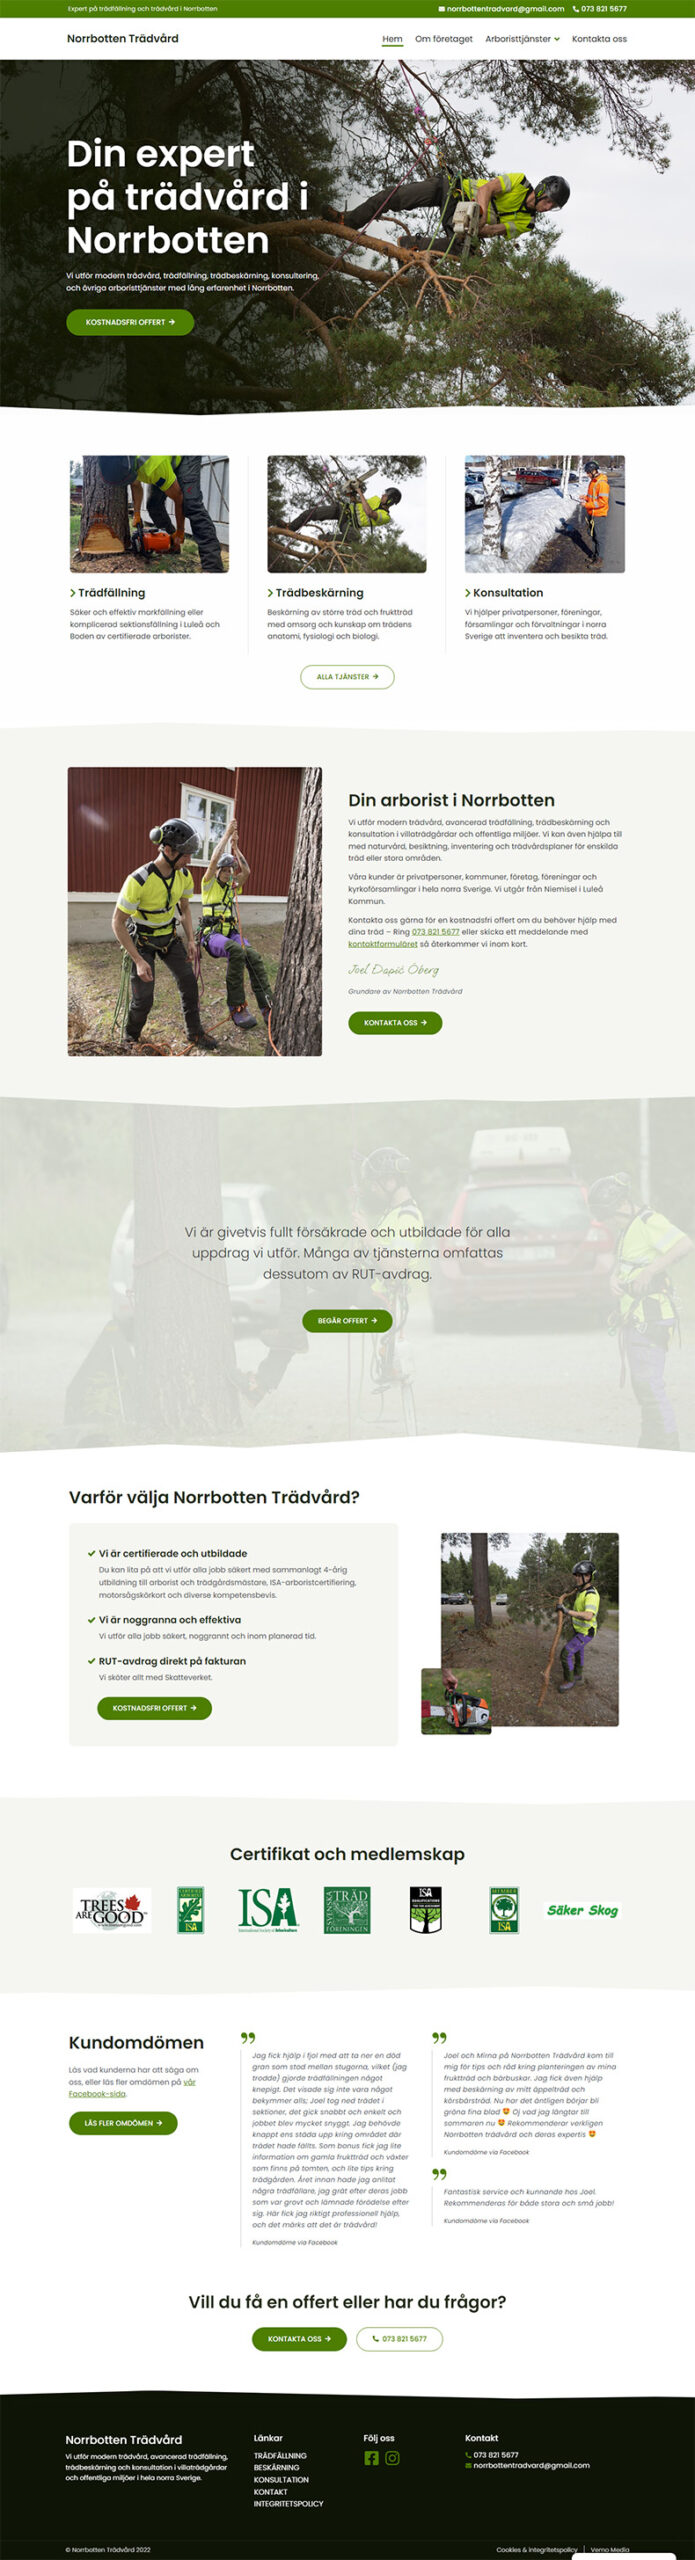 norrbotten trädvård website